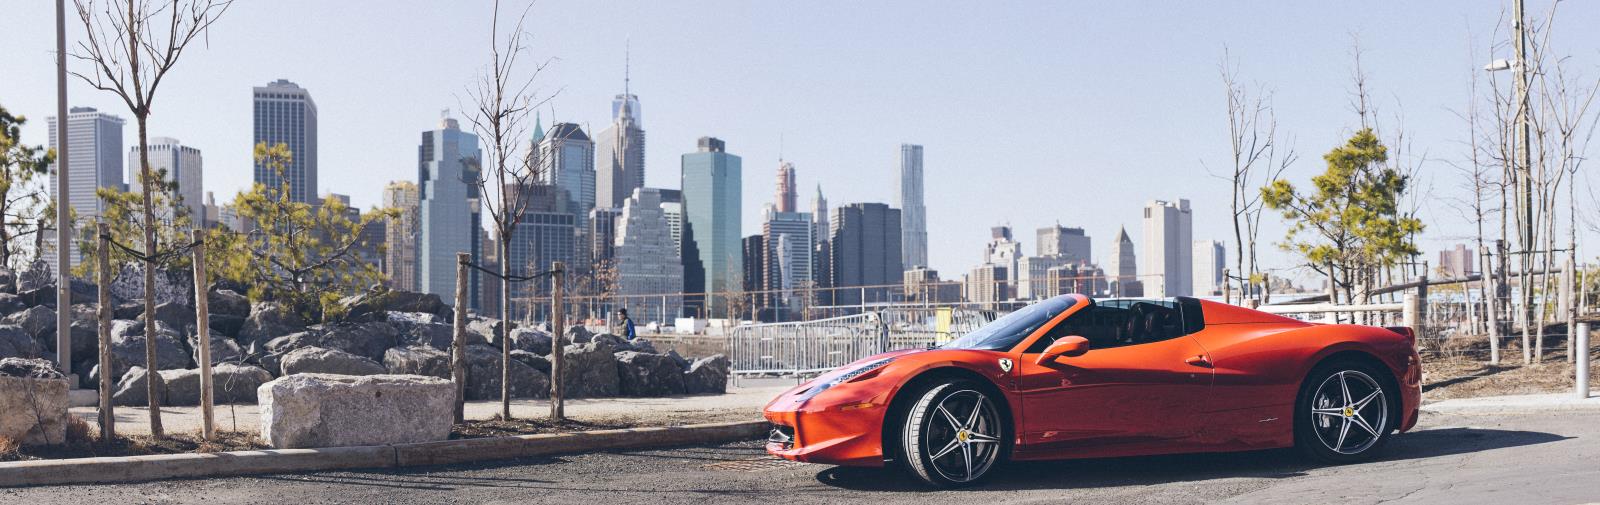 Ferrari 458 rental